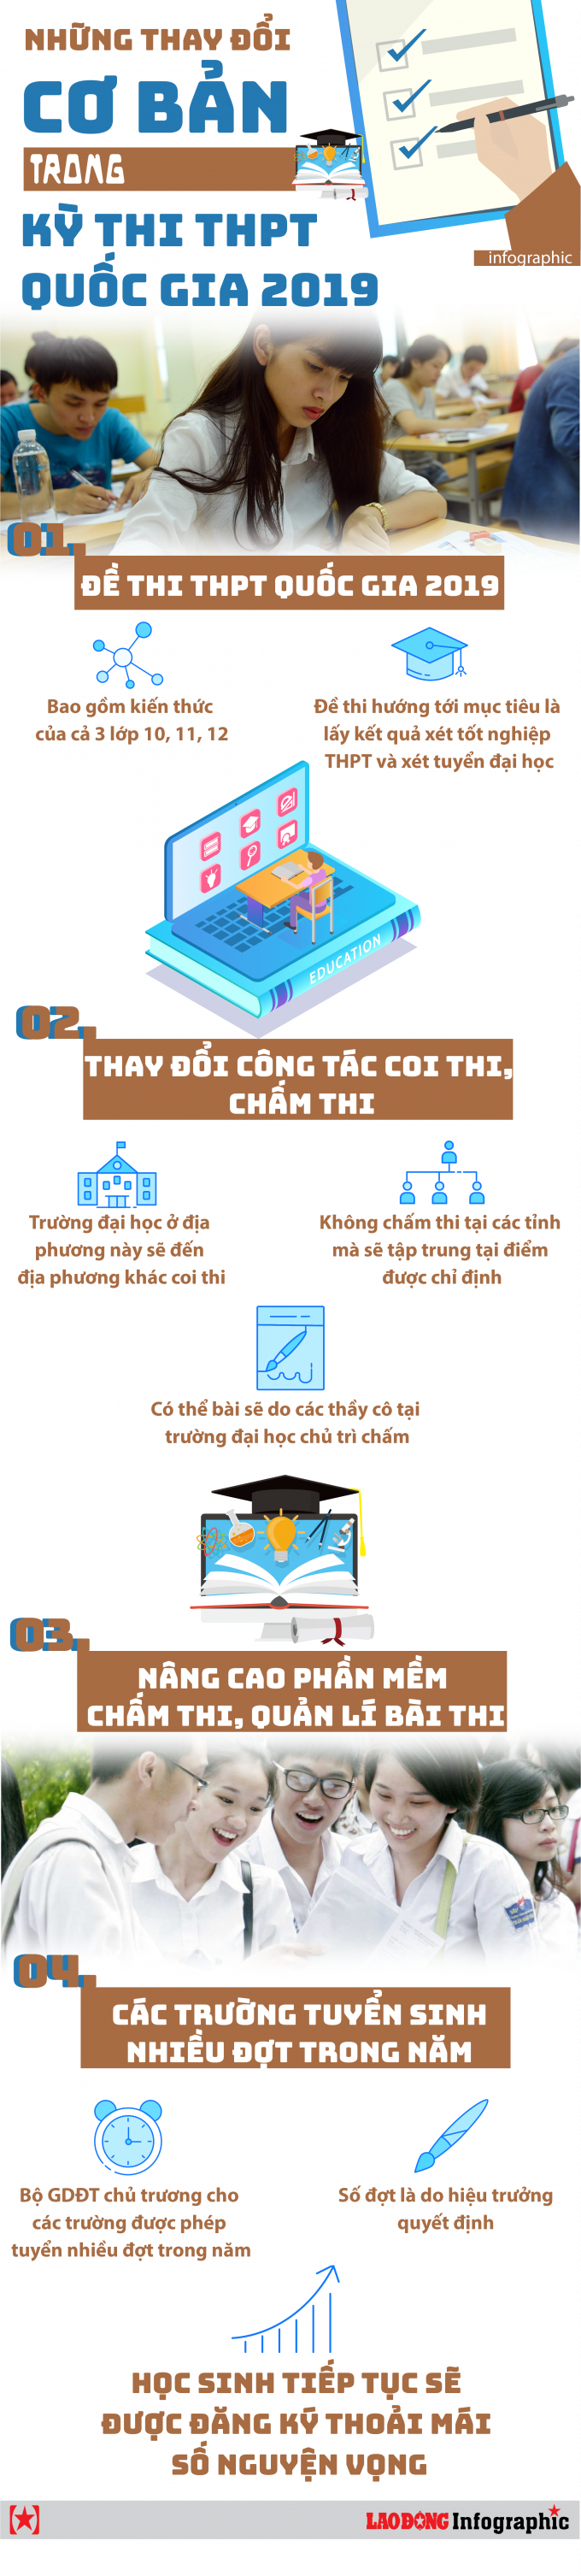 Infographic: Những thay đổi cơ bản trong kỳ thi THPT quốc gia 2019